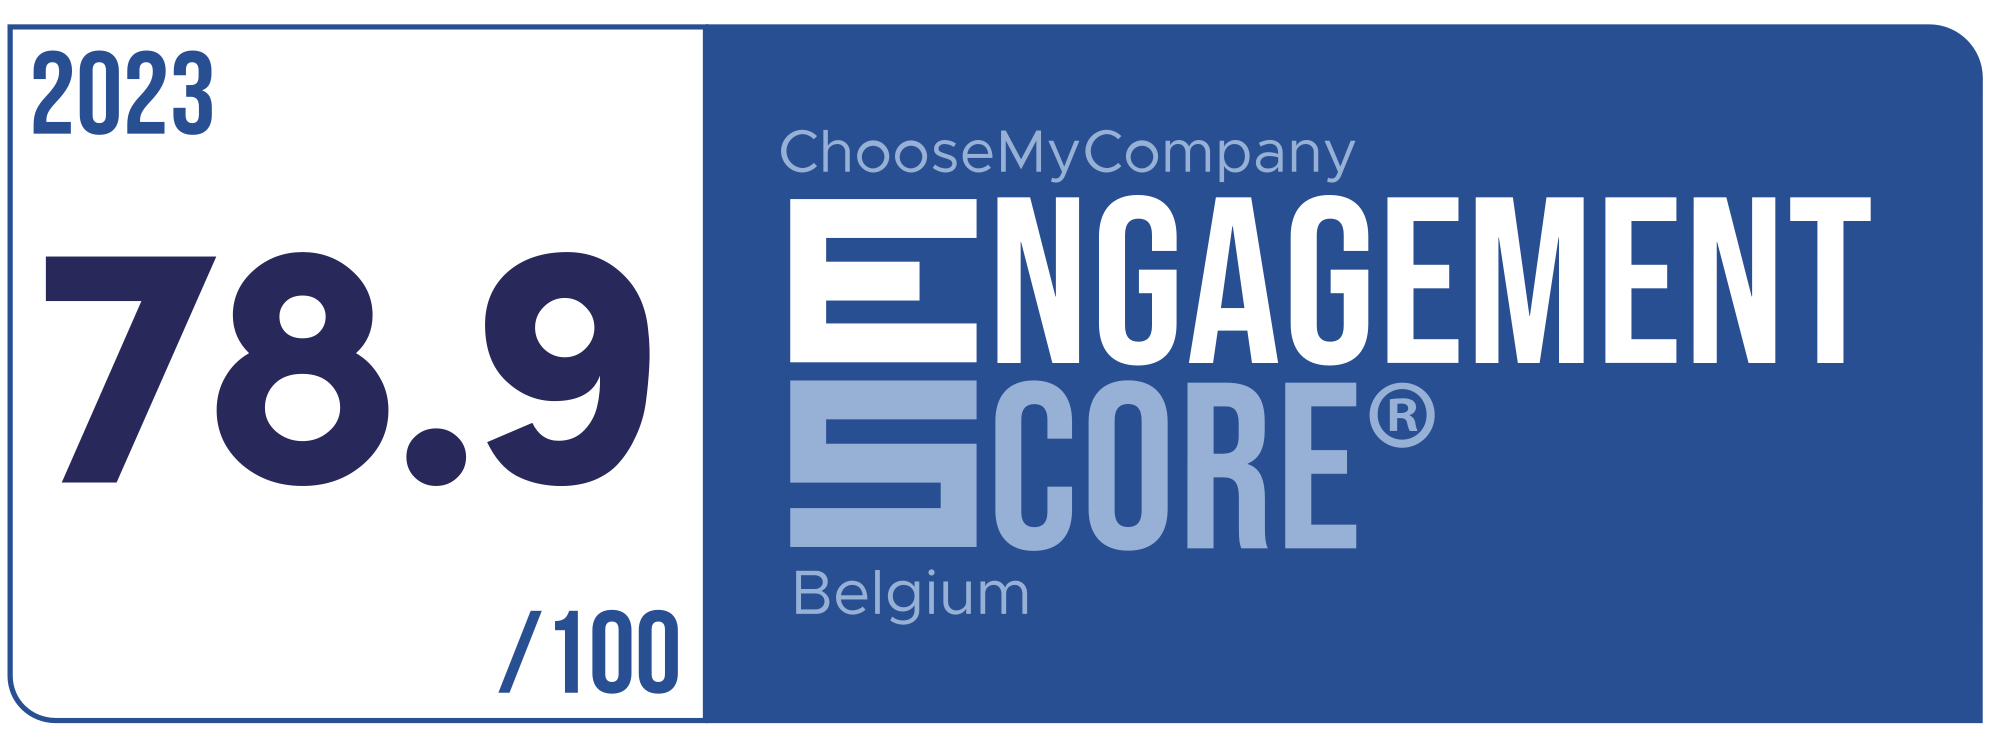 Label Engagement Score 2023 Belgium